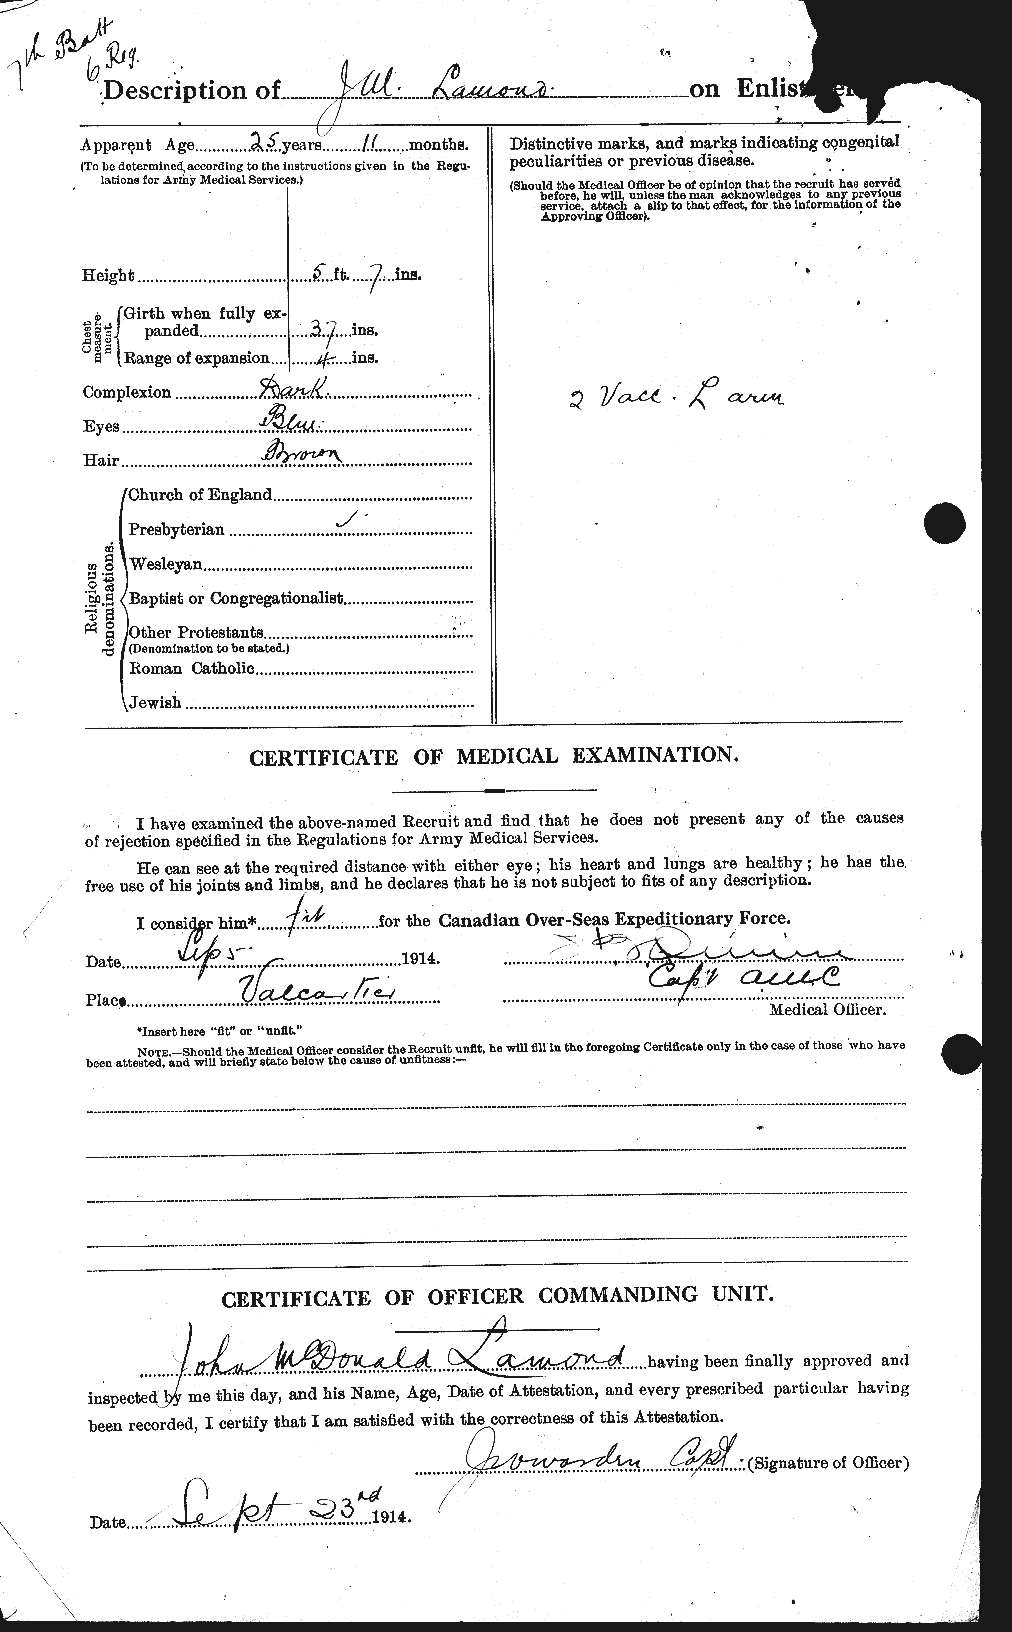 Dossiers du Personnel de la Première Guerre mondiale - CEC 446083b